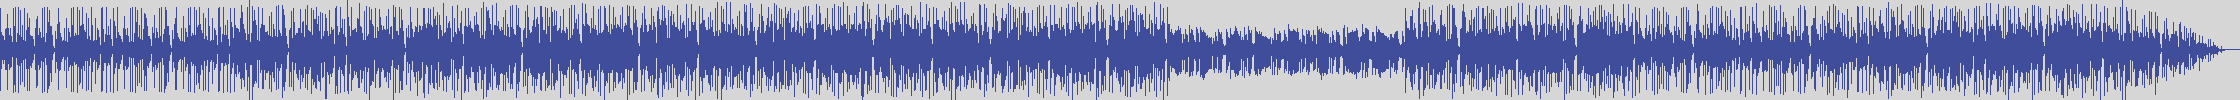 noclouds_chillout [NOC034] Dbm Project - Dbm [Original Mix] audio wave form